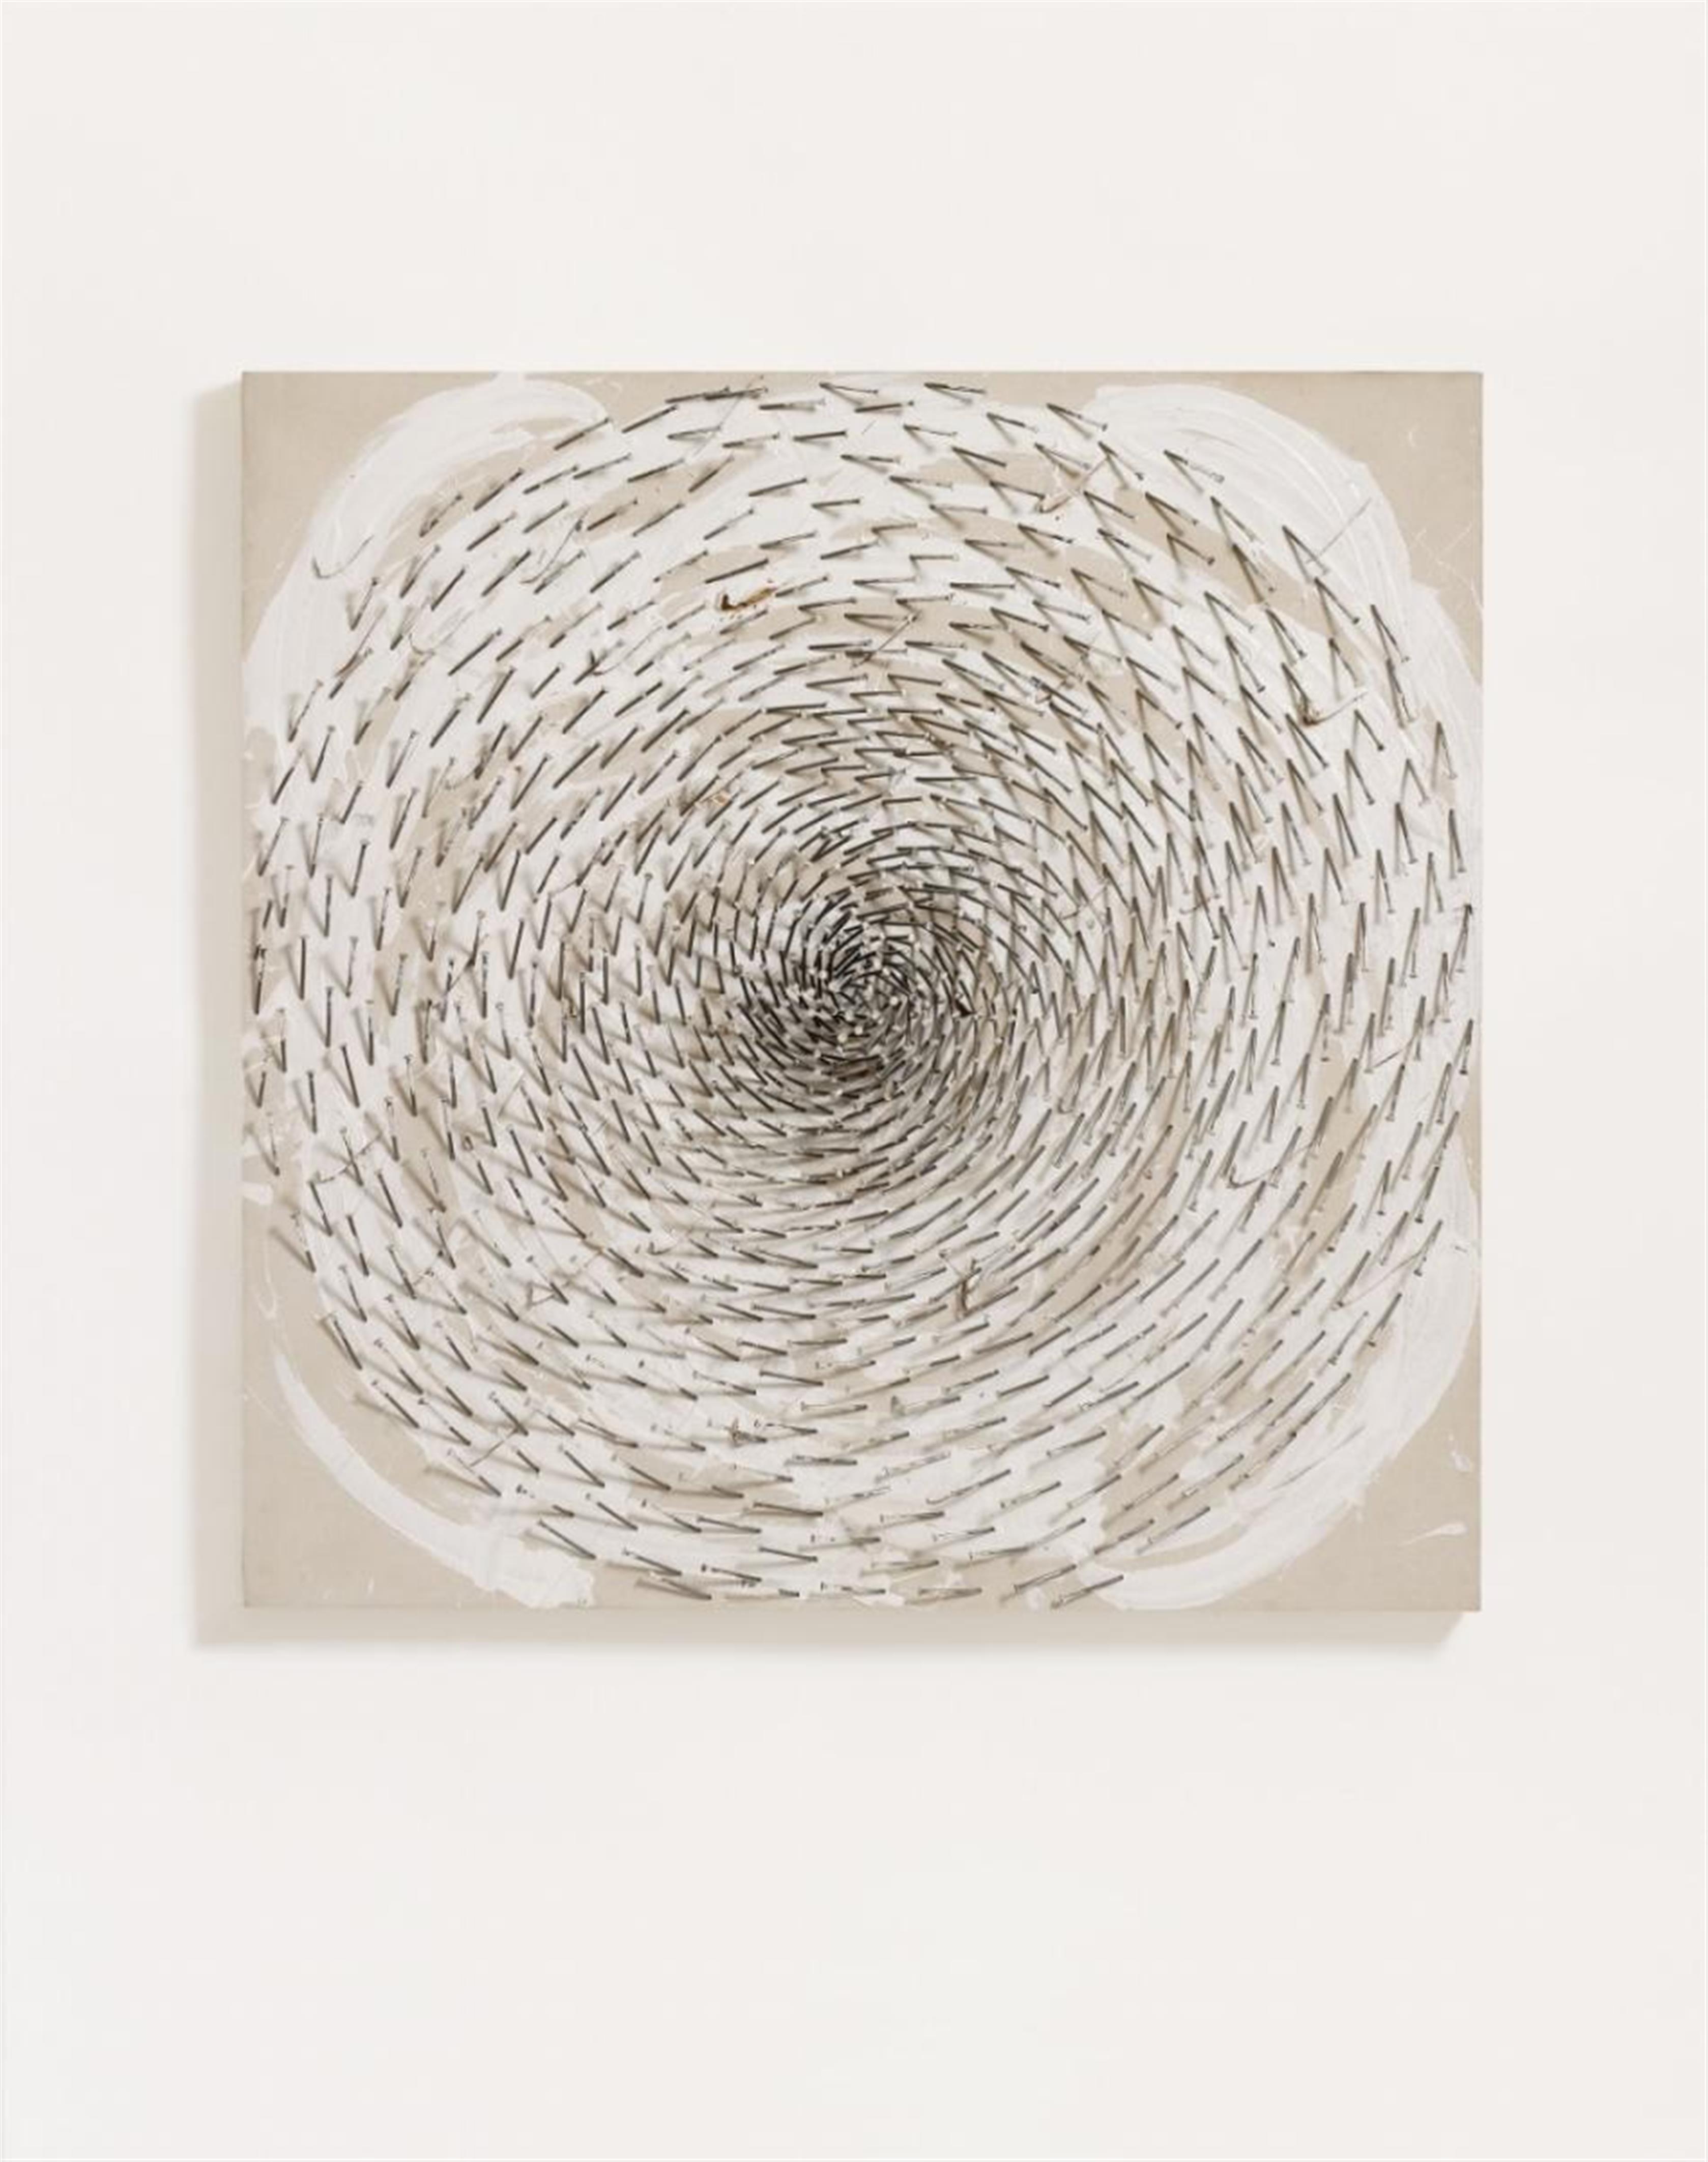 Günther Uecker - Weisse Spirale (white spiral) - image-2